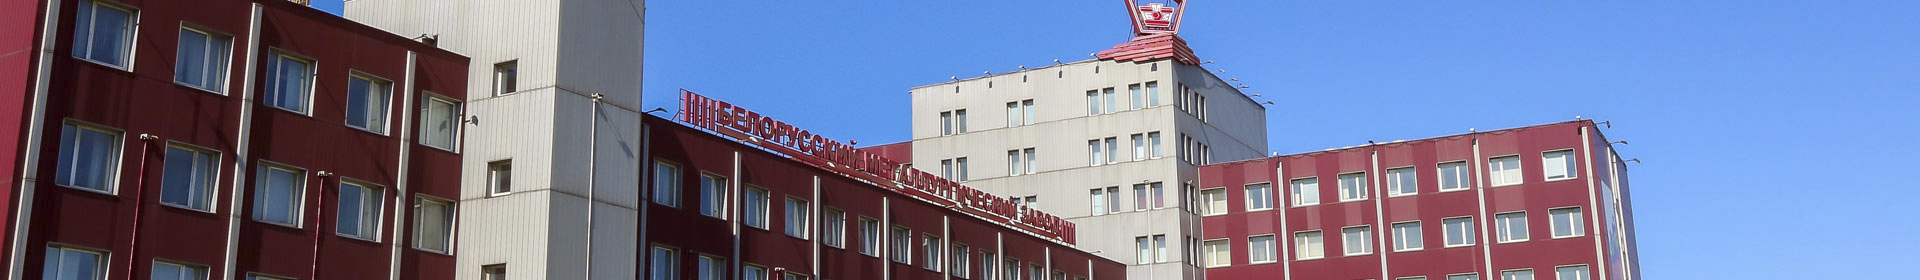 Белорусский металлургический завод - управляющая компания холдинга Белорусская металлургическая компания ОАО